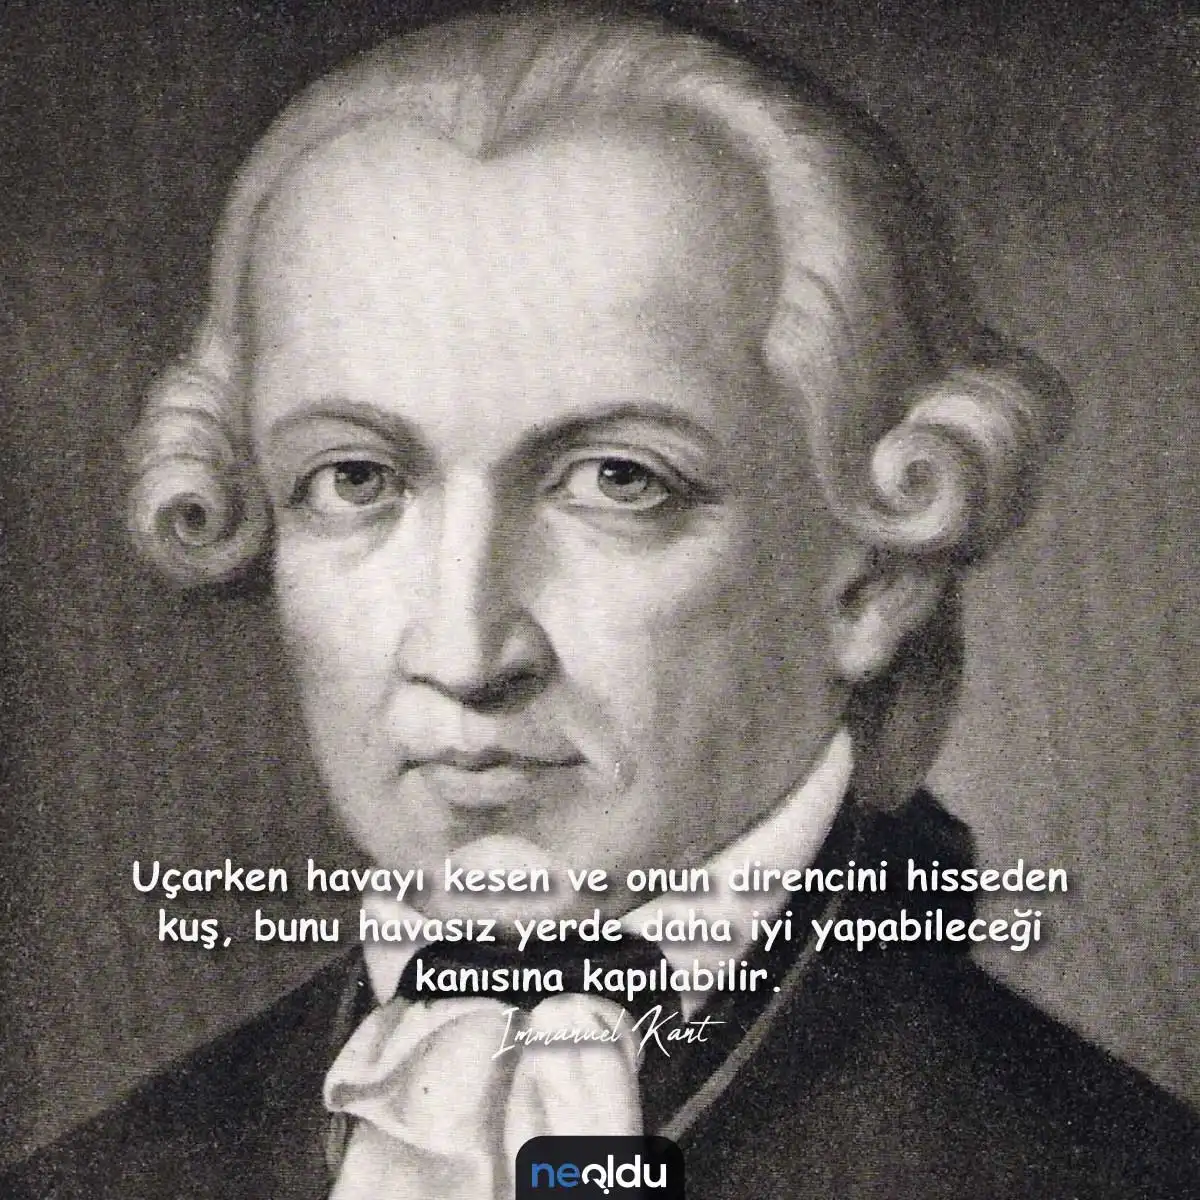 Дж кант. Иммануил кант философ. Немецкий философ Иммануил кант. Immanuel Kant 1724-1804. Иммануил кант портрет.